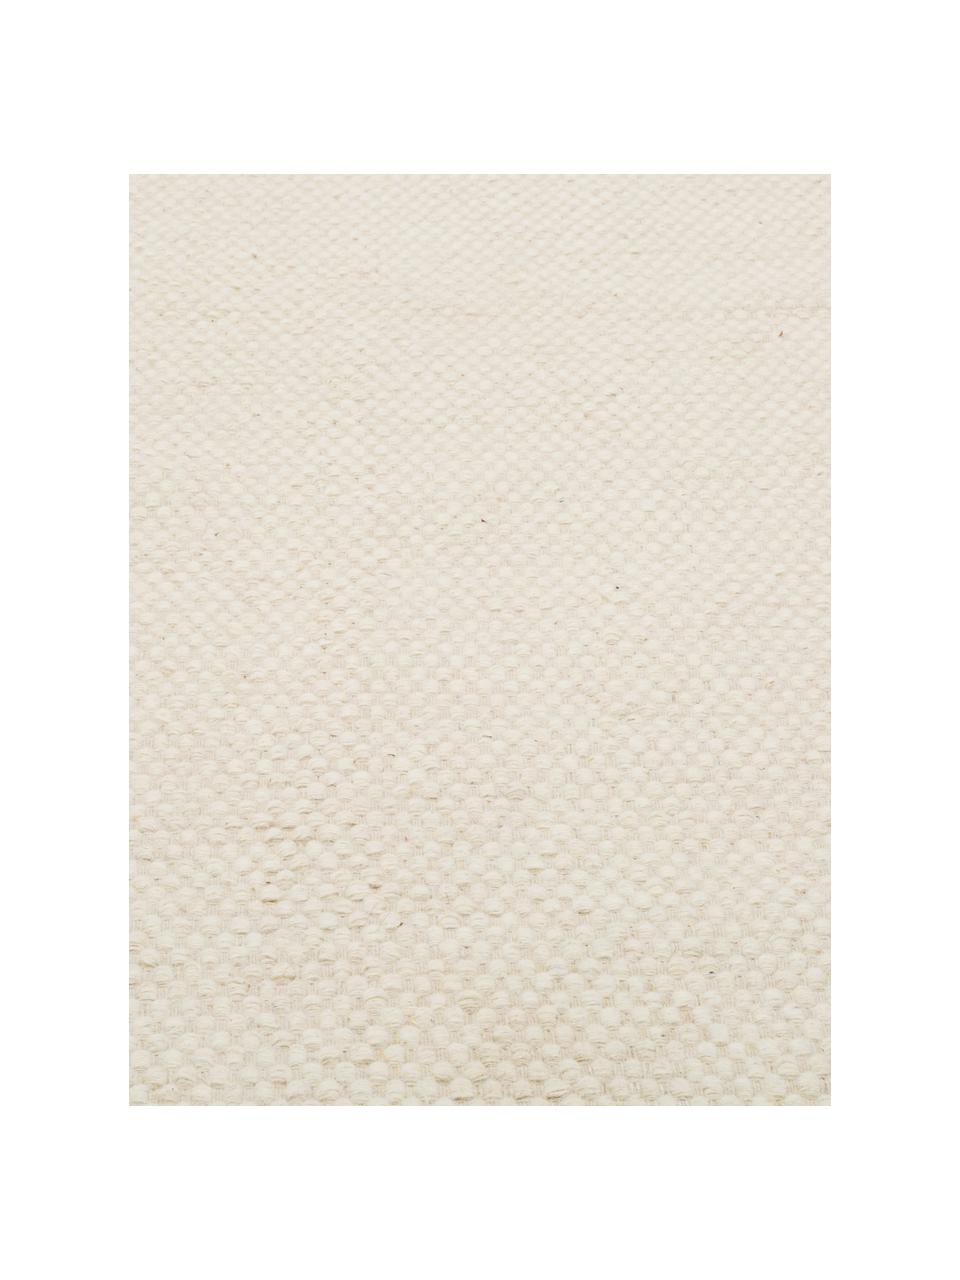 Handgewebter Kelimteppich Delight aus Wolle in Cremeweiß, Vorderseite: 90% Wolle, 10% Baumwolle, Rückseite: Baumwolle, Wollweiß, B 250 x L 350 cm (Größe XL)